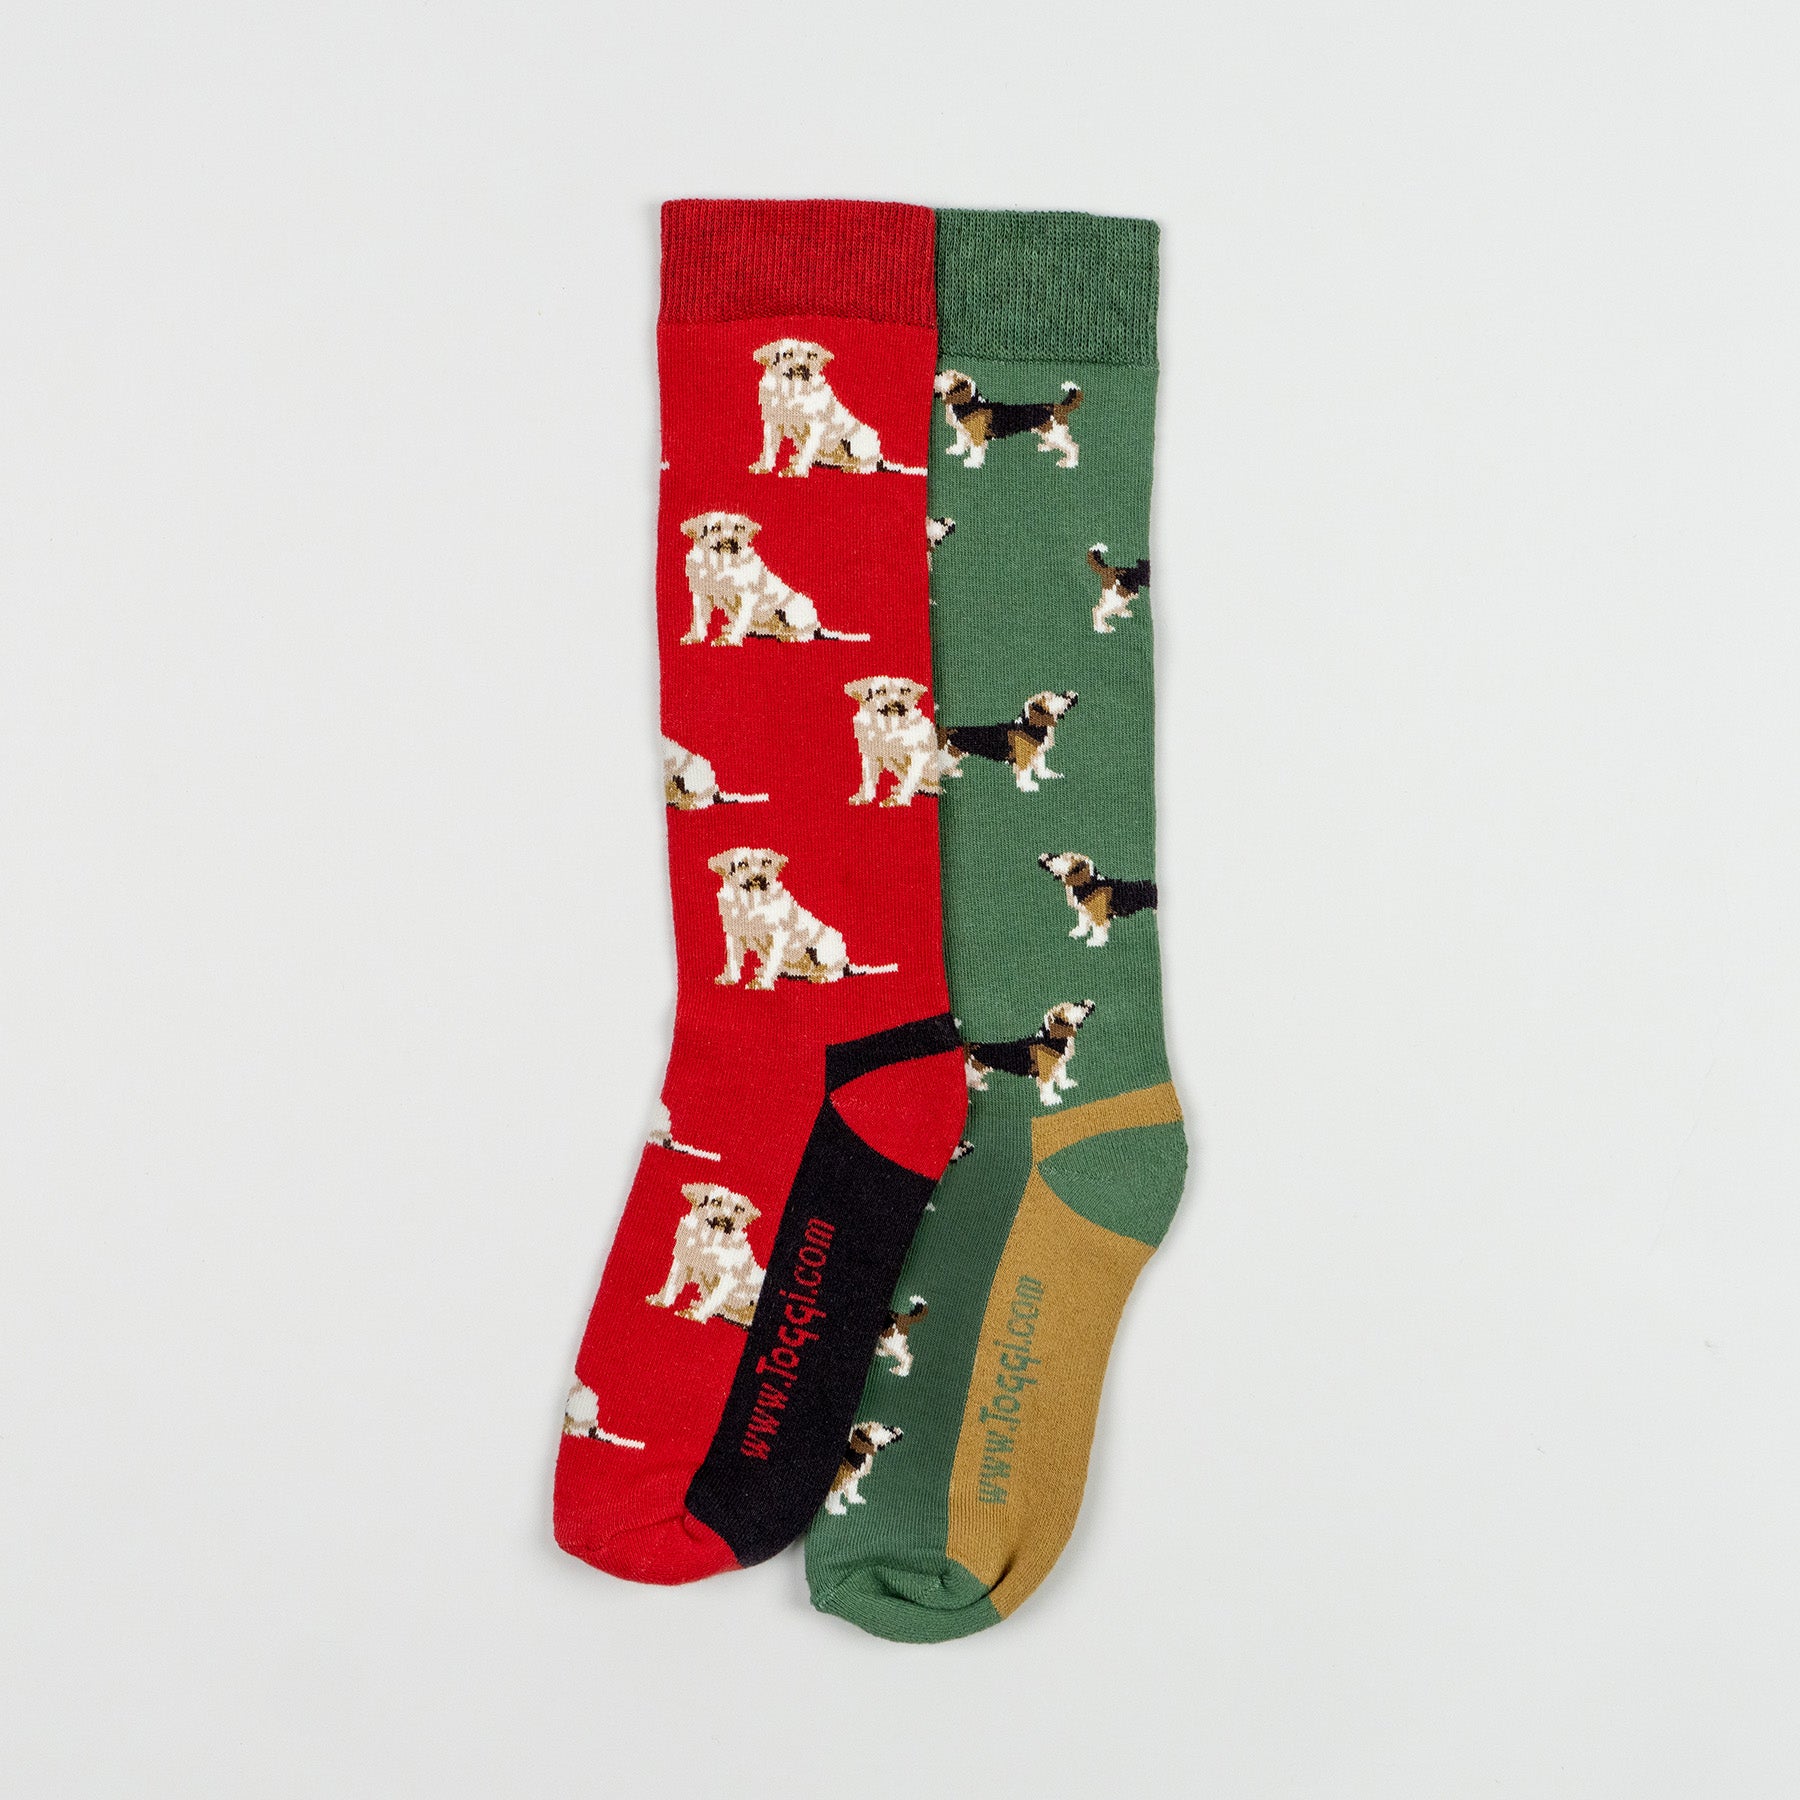 Toggi Mens Labrador And Beagle 2pk Socks Red/Green 7-11